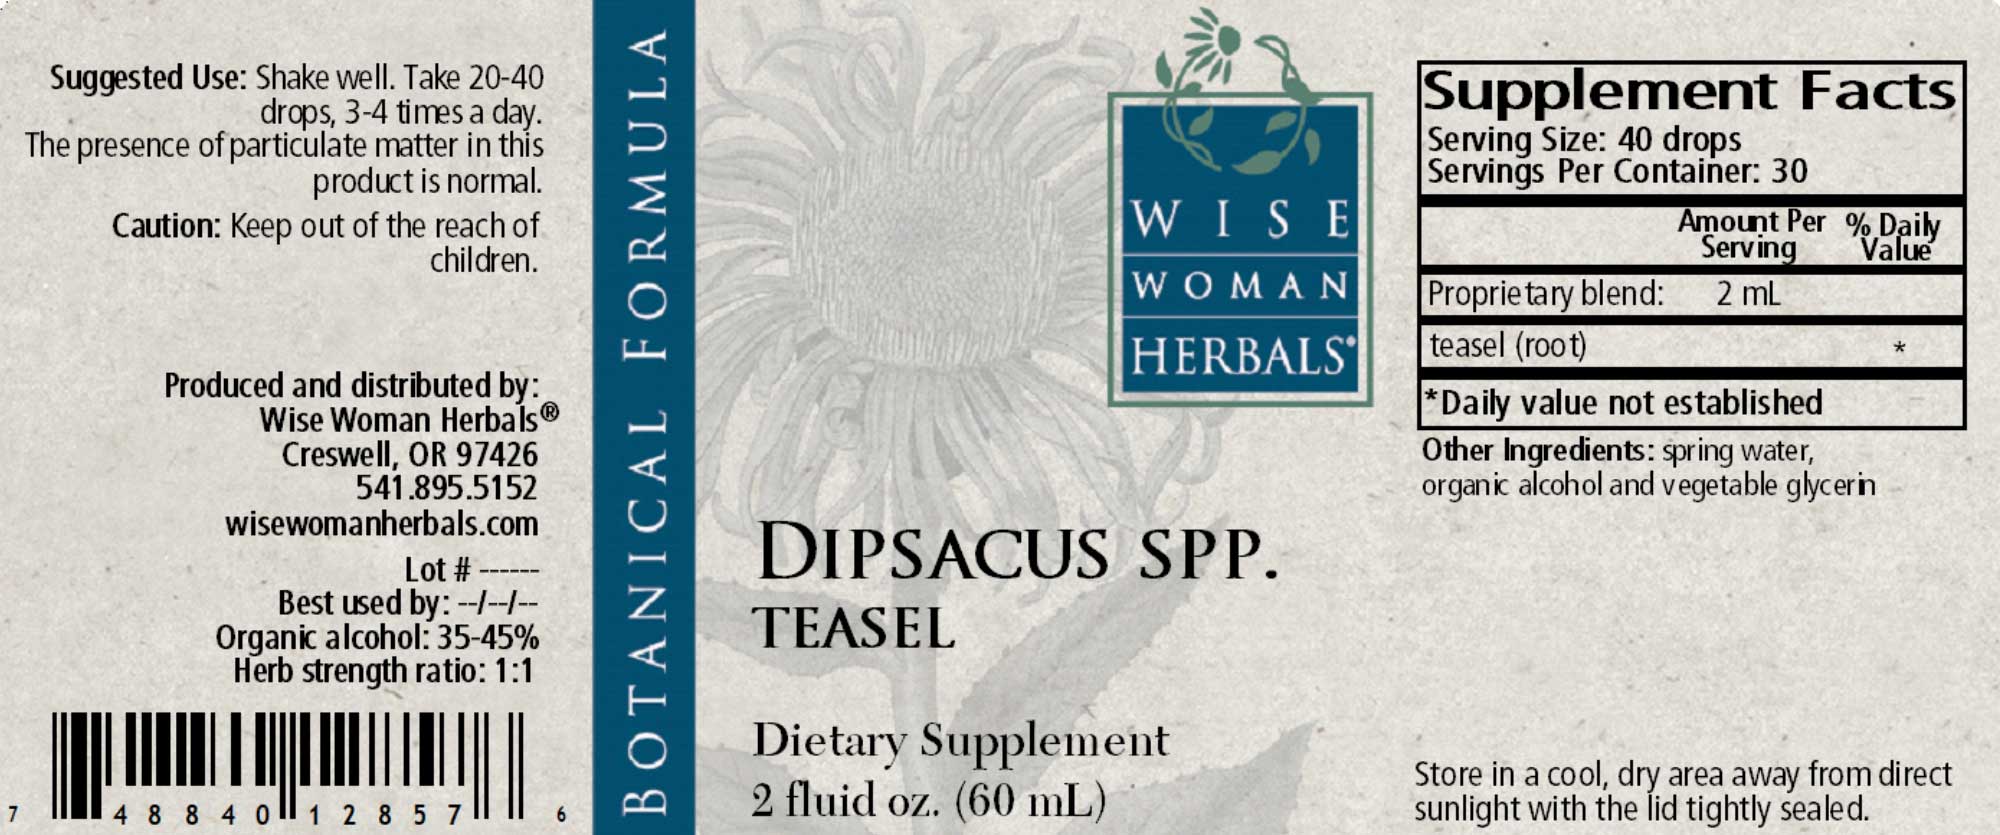 Wise Woman Herbals Dipsacus Spp Teasel Label